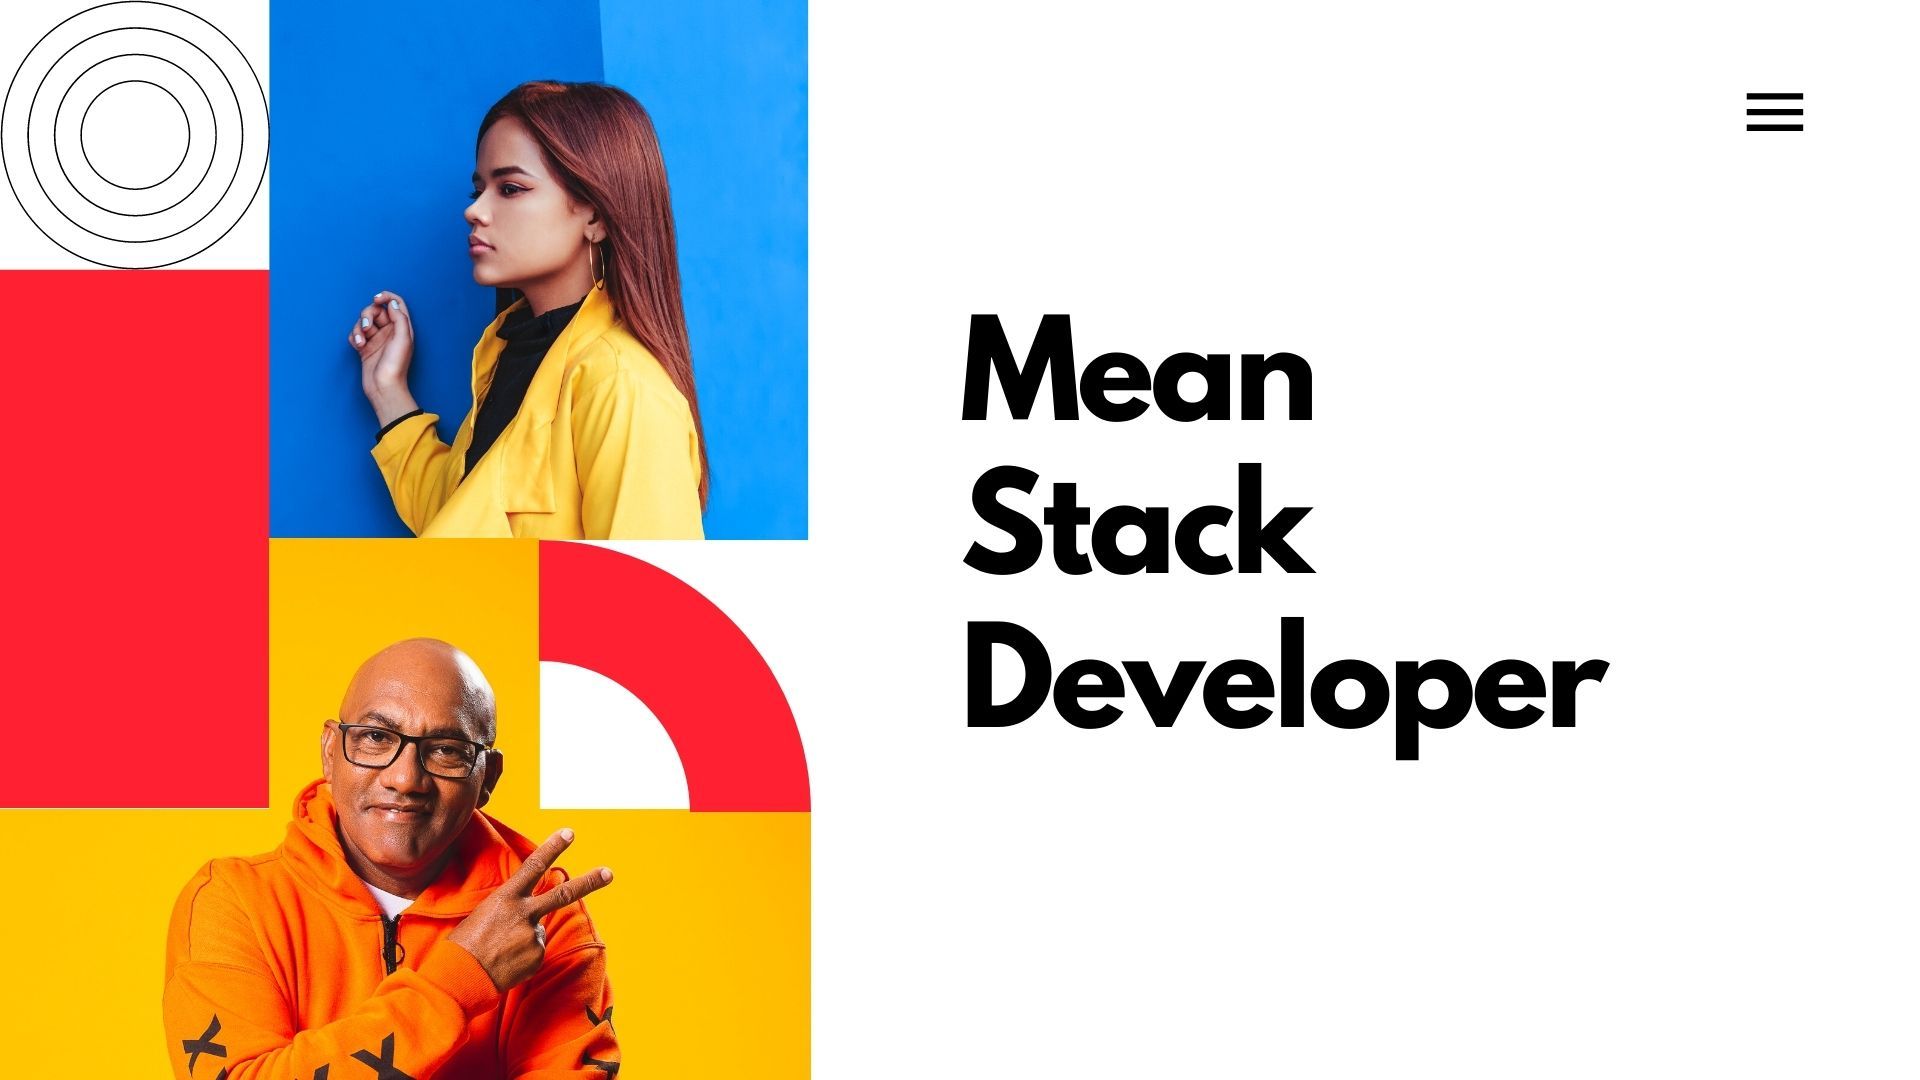 Mean Stack Developer